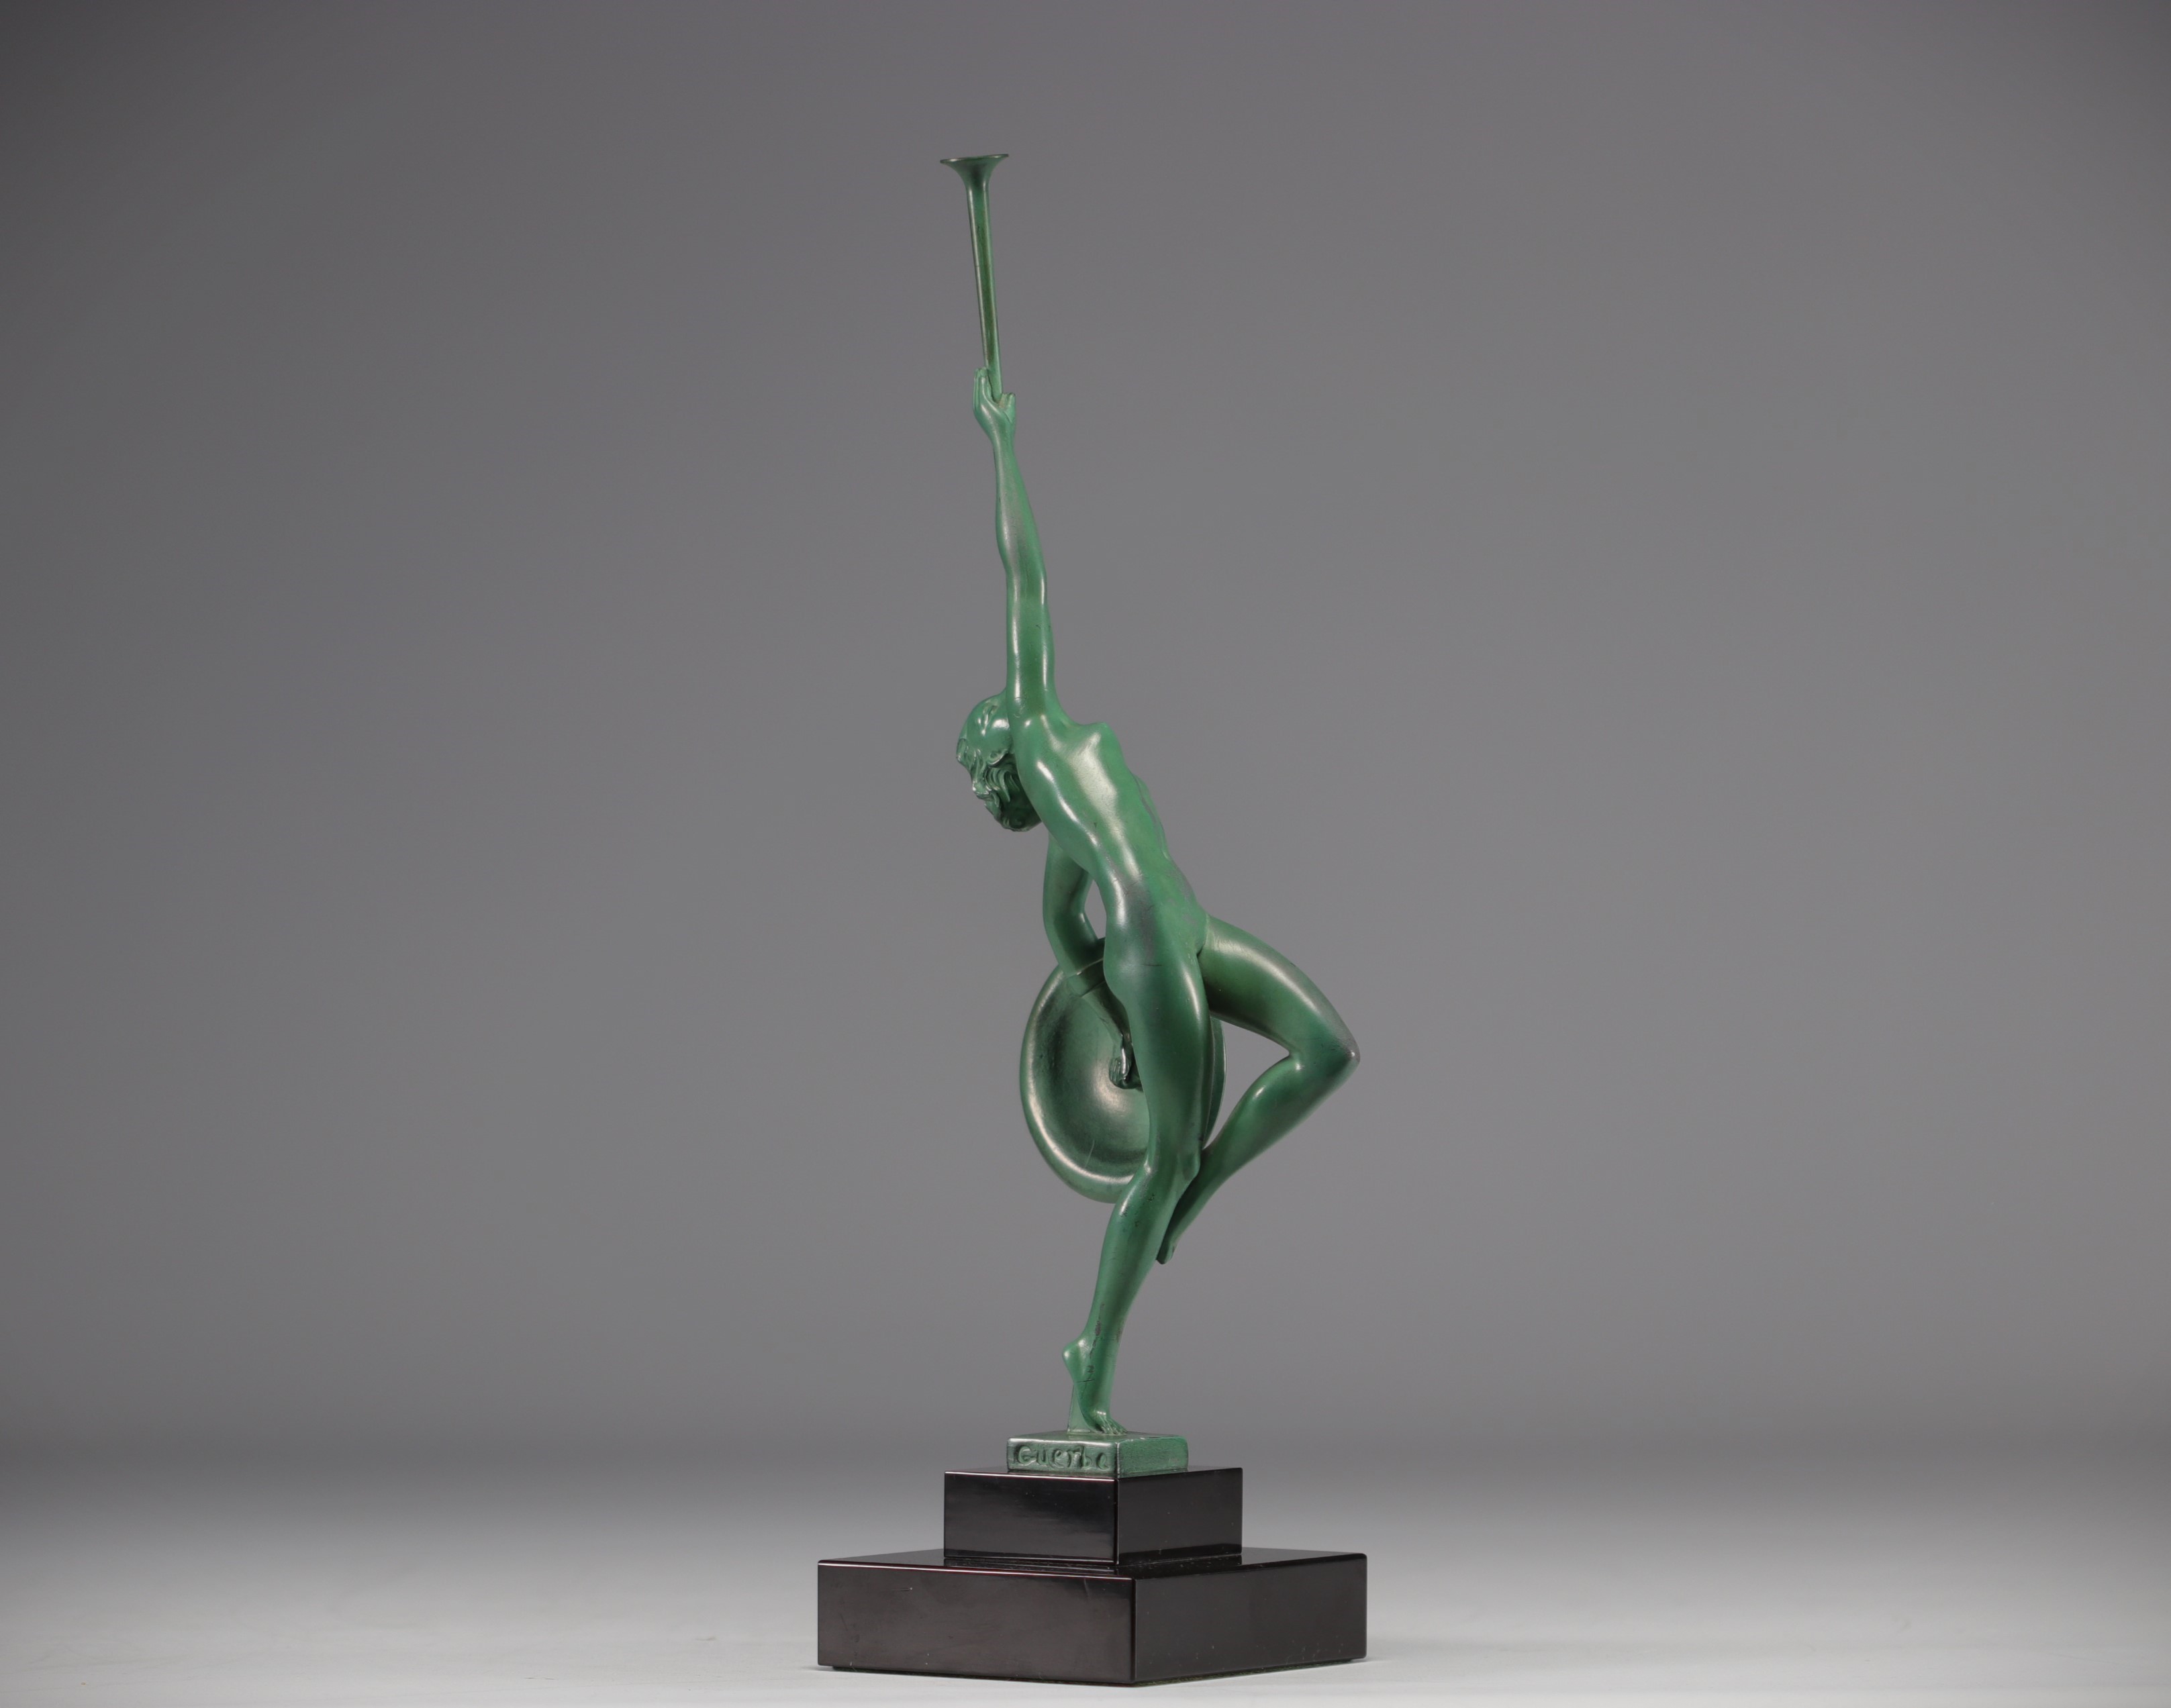 Raymond GUERBE (1894-1995), Max LE VERRIER's workshop, "Jericho" Art Deco sculpture. - Image 4 of 5